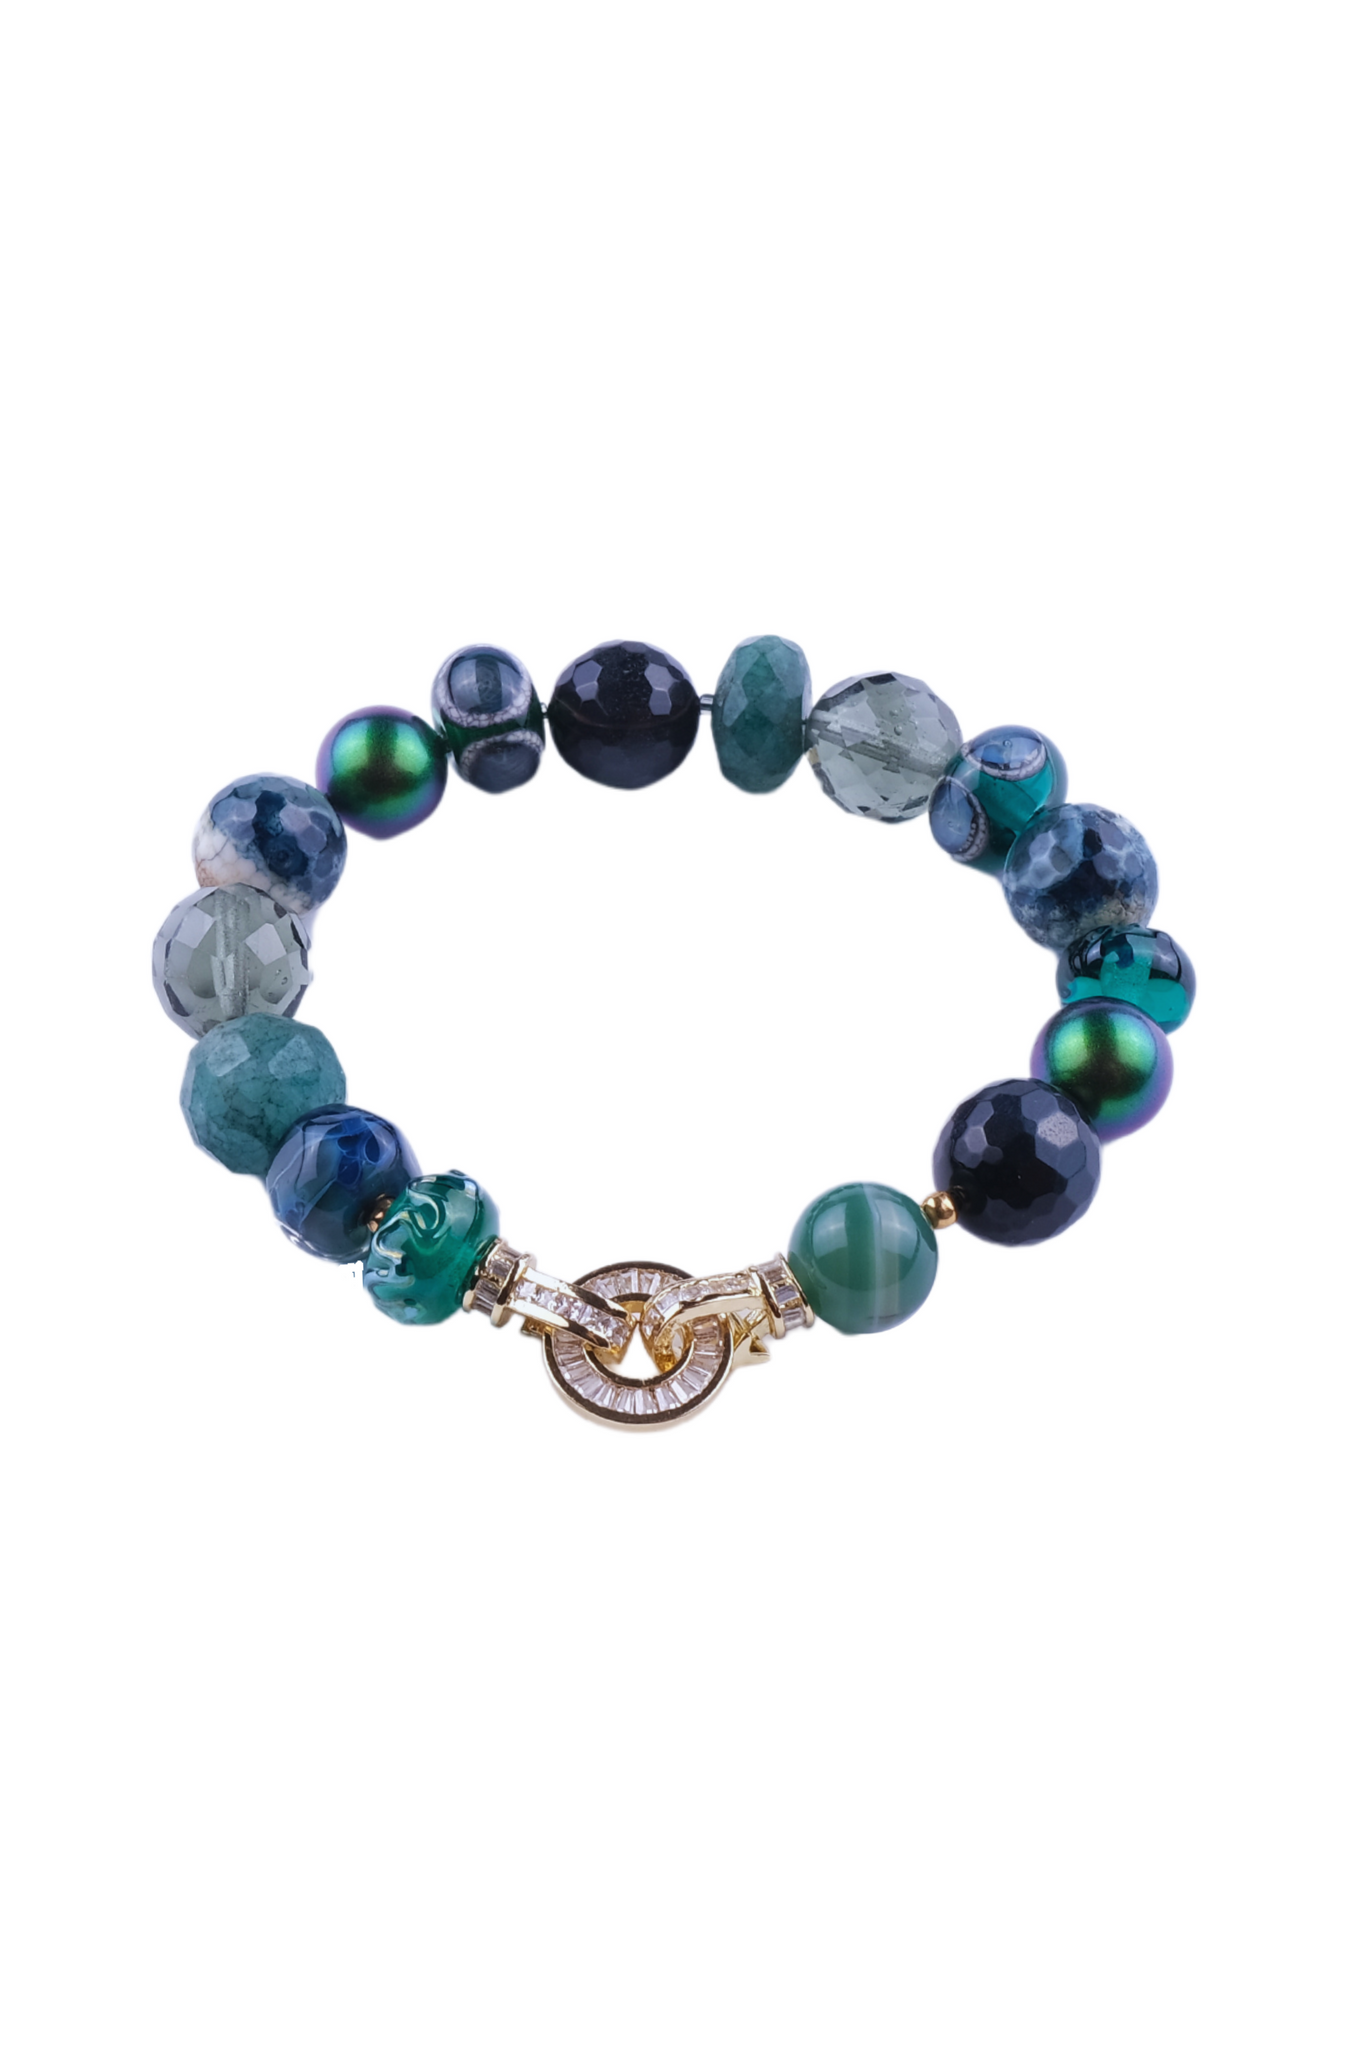 Billede af Unika armbånd i grønne farver - Agat, Shell Perler, Vintage glas perler, Håndlavede glas perler